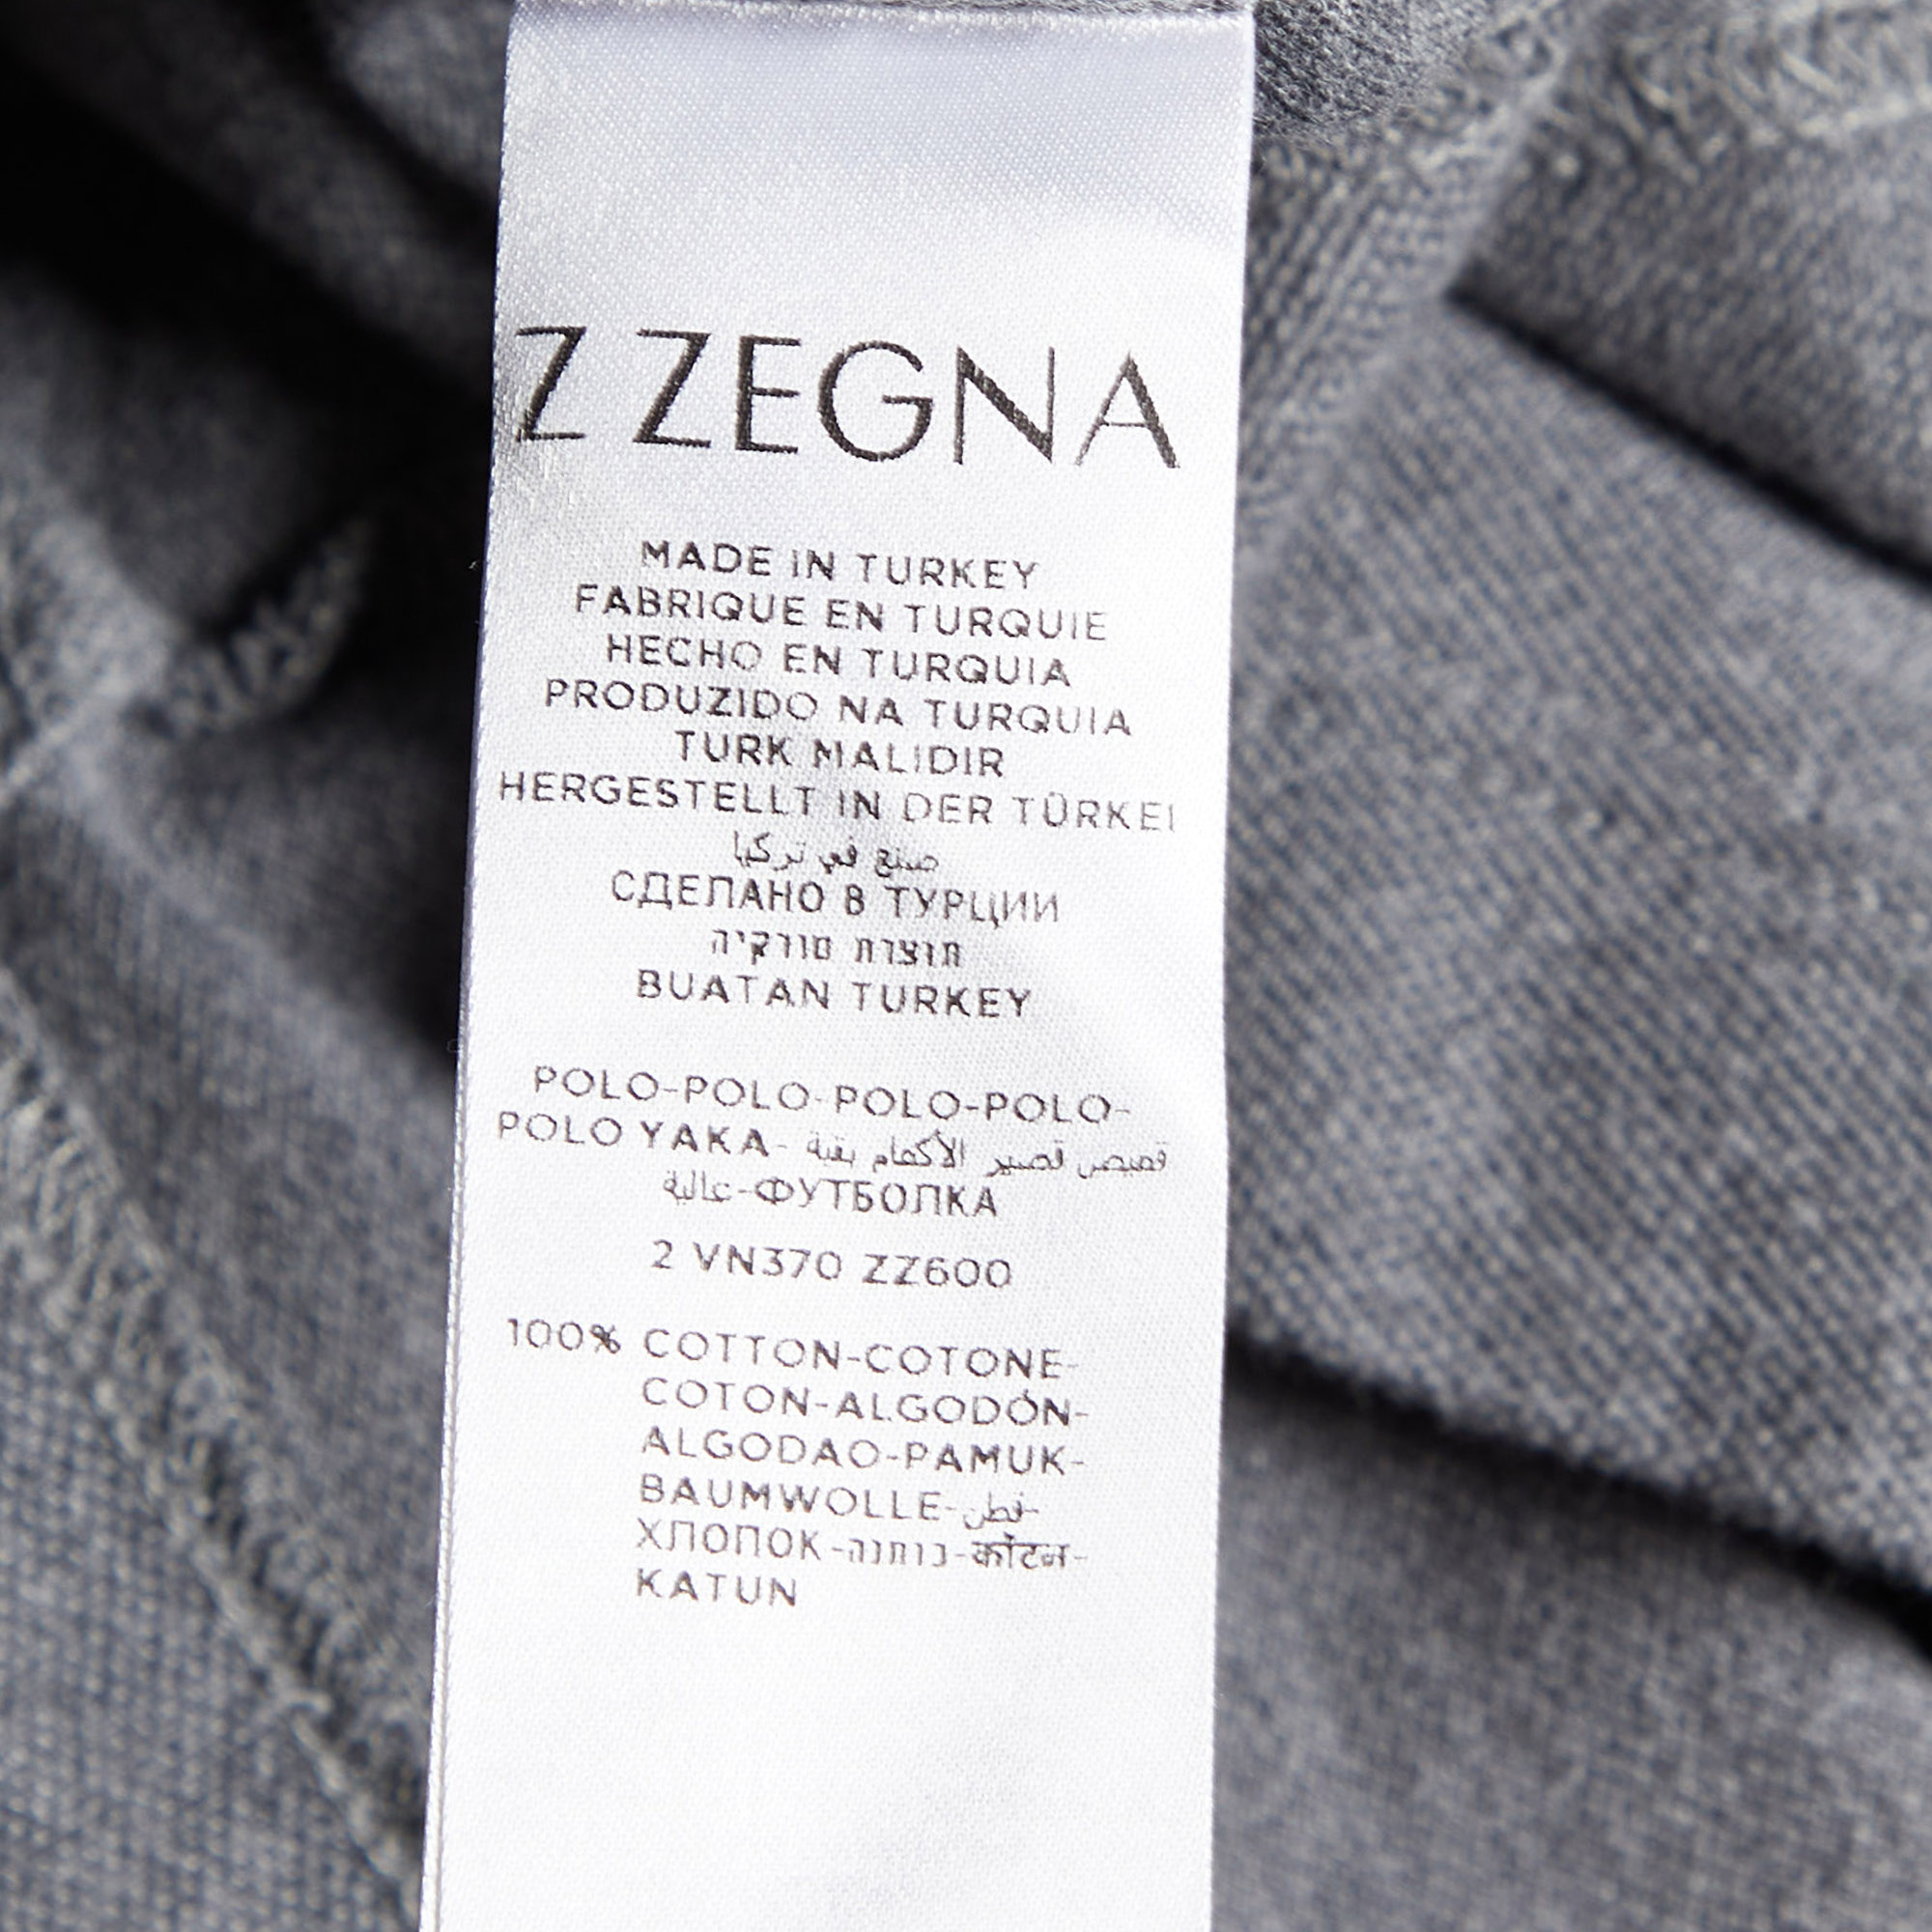 Z Zegna Grey Cotton Pique Polo T-Shirt XL